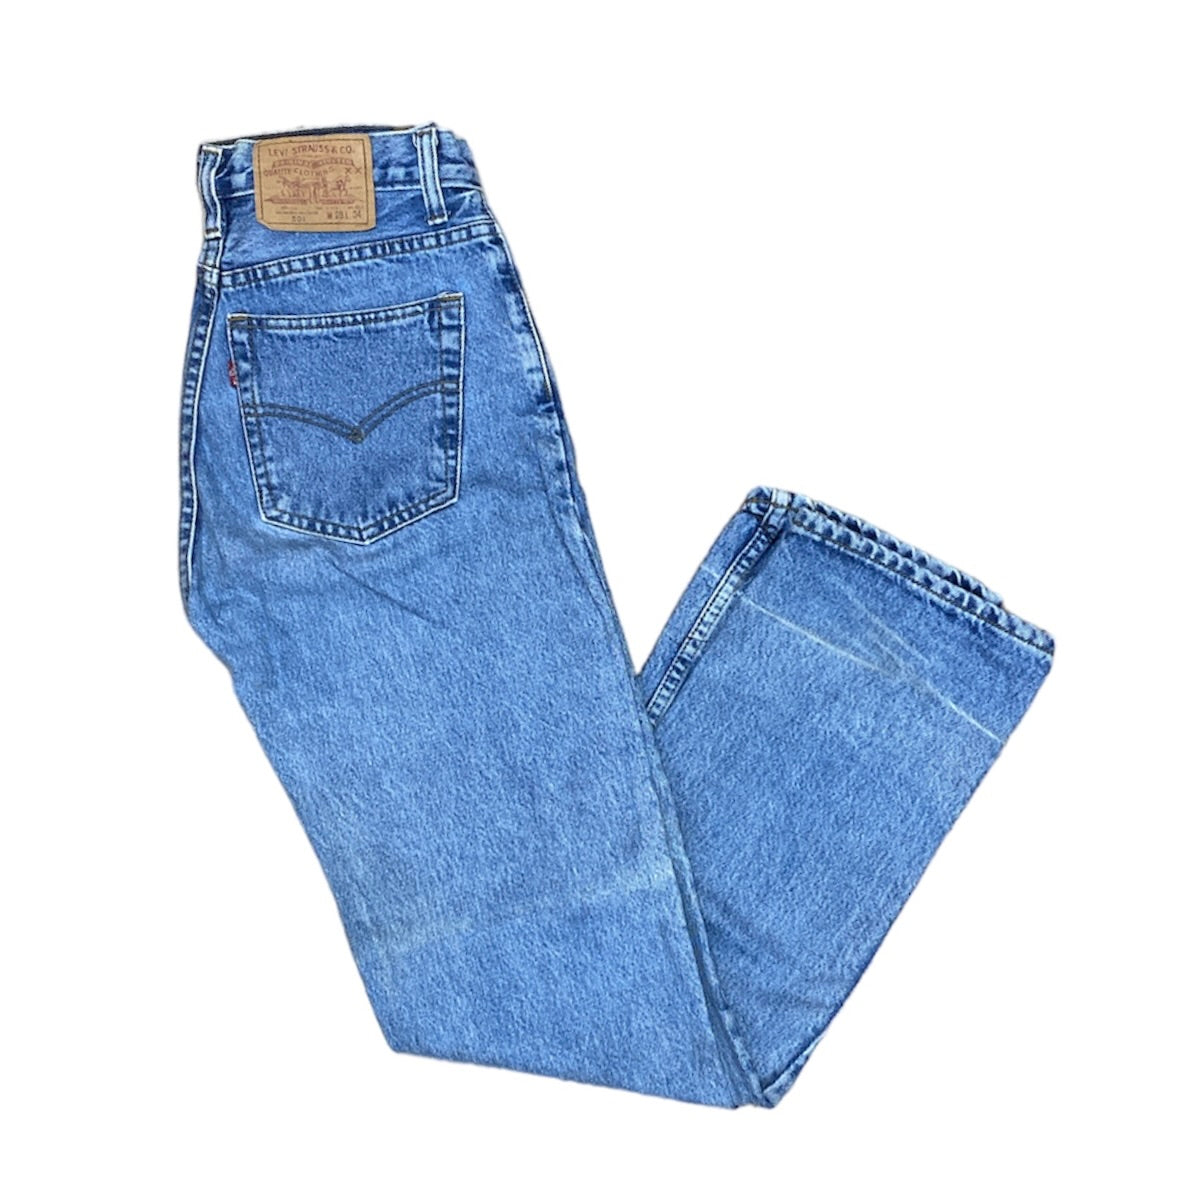 Vintage Levis 501 Blue Jeans (W28/L34)